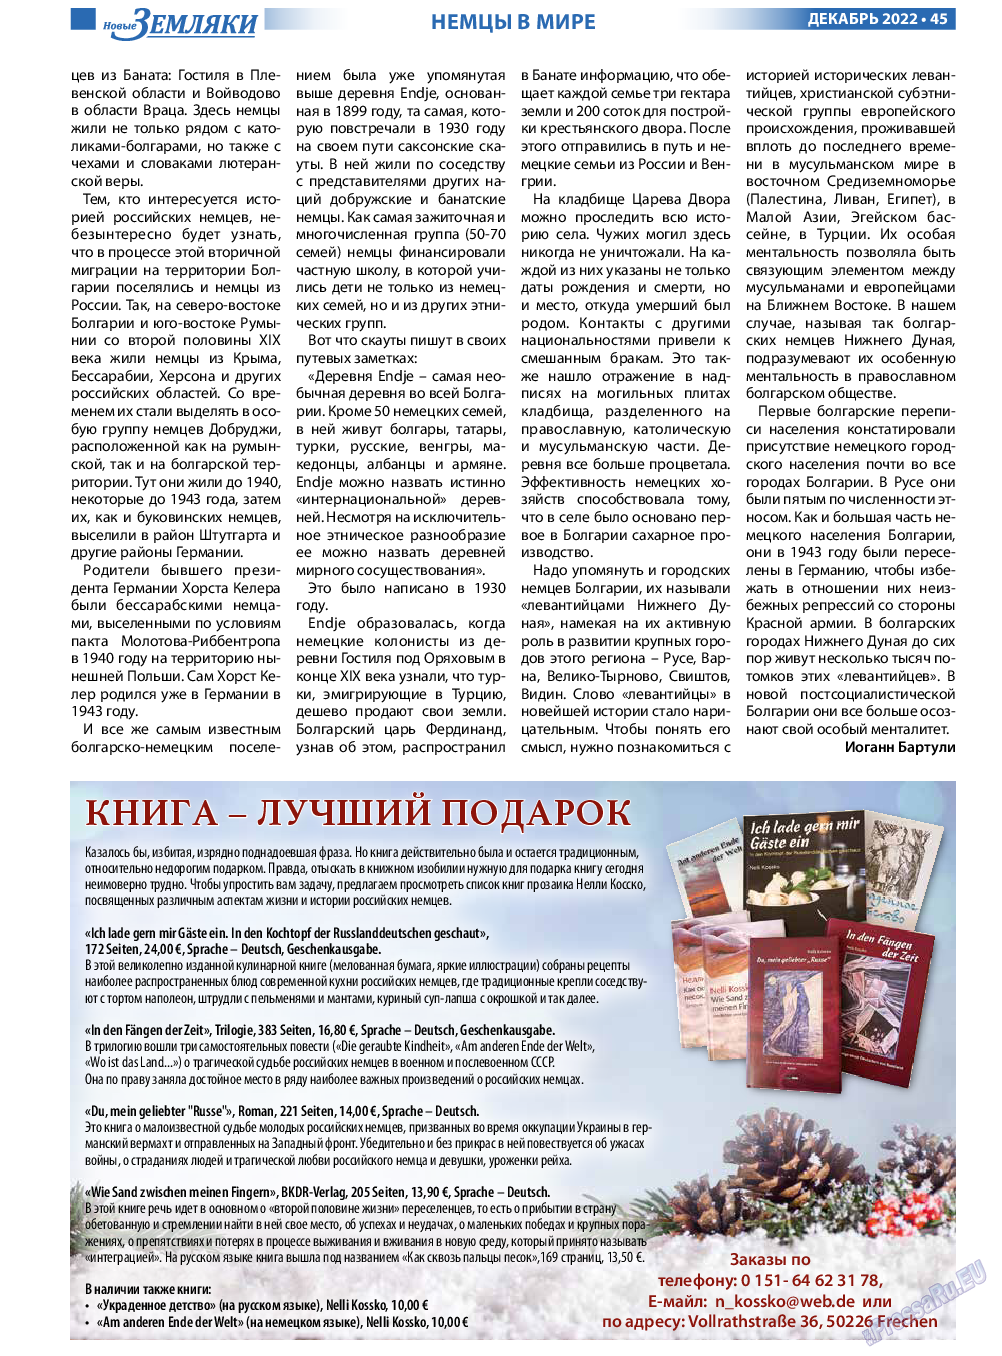 Новые Земляки, газета. 2022 №12 стр.45